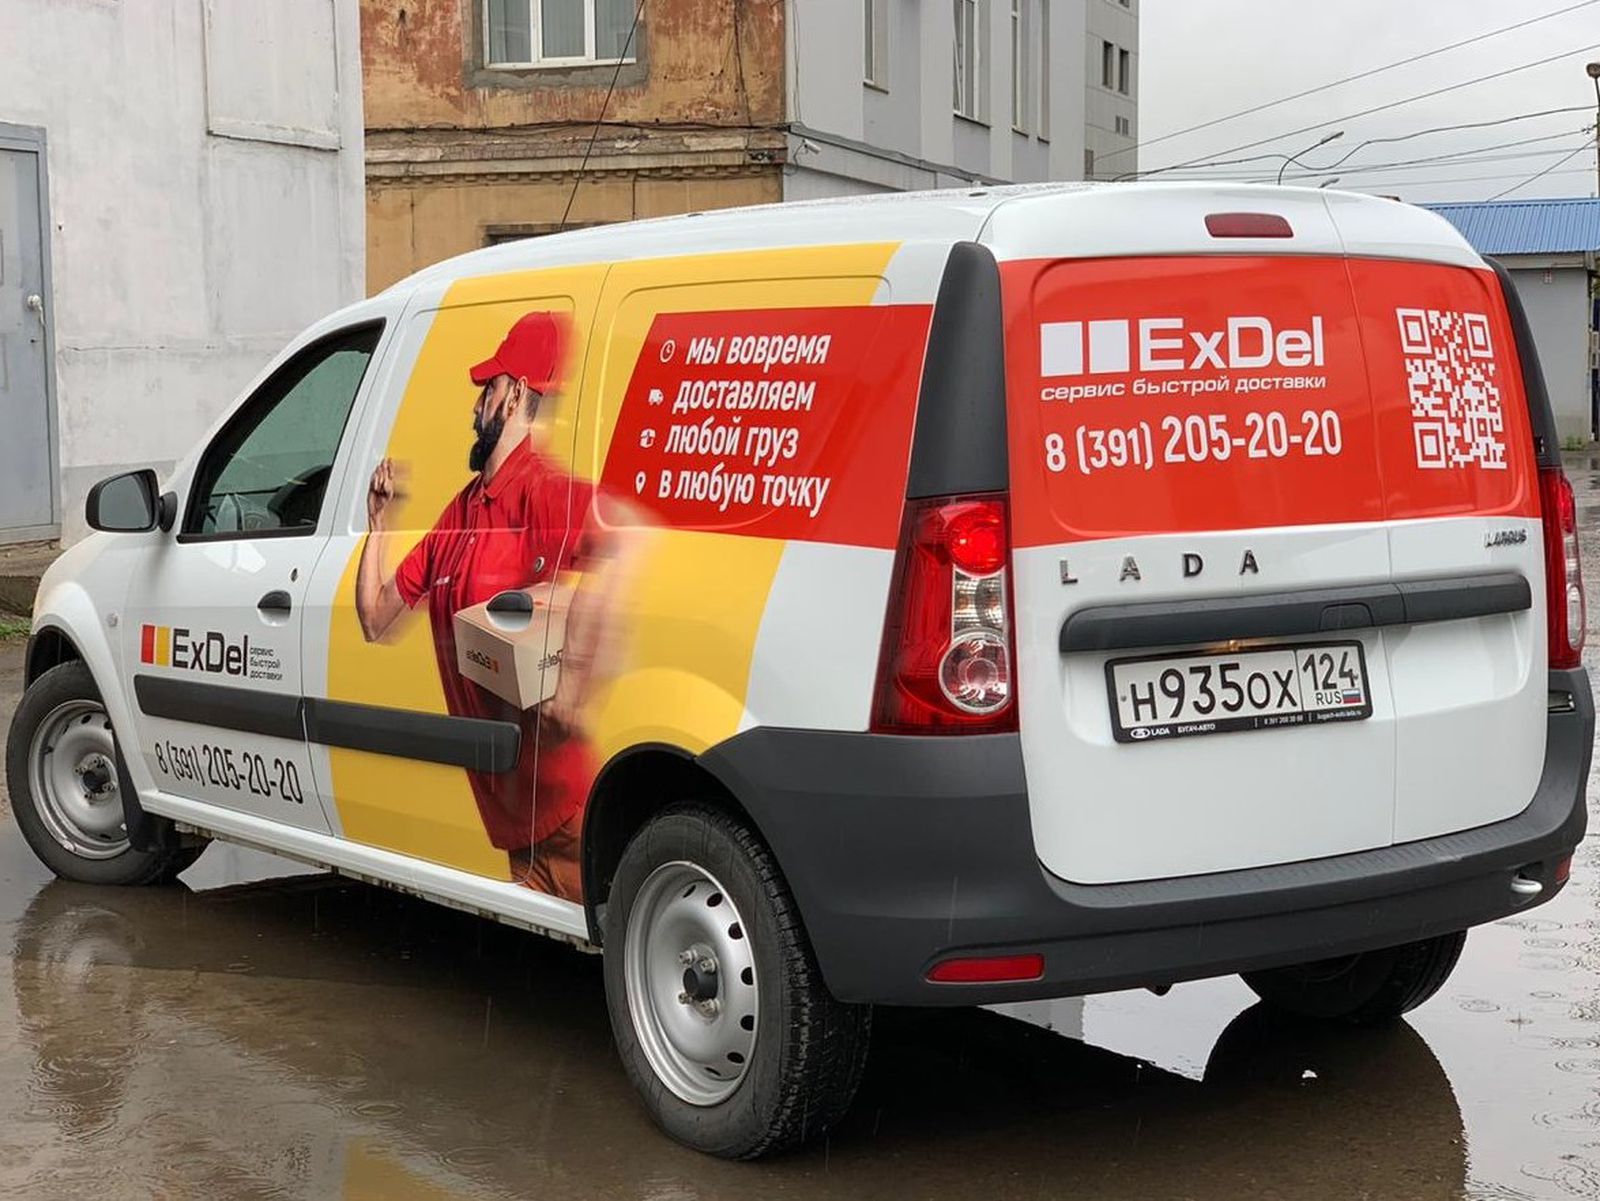 Реклама на авто за деньги в москве: Доступ с вашего IP-адреса временно ограничен — Авито